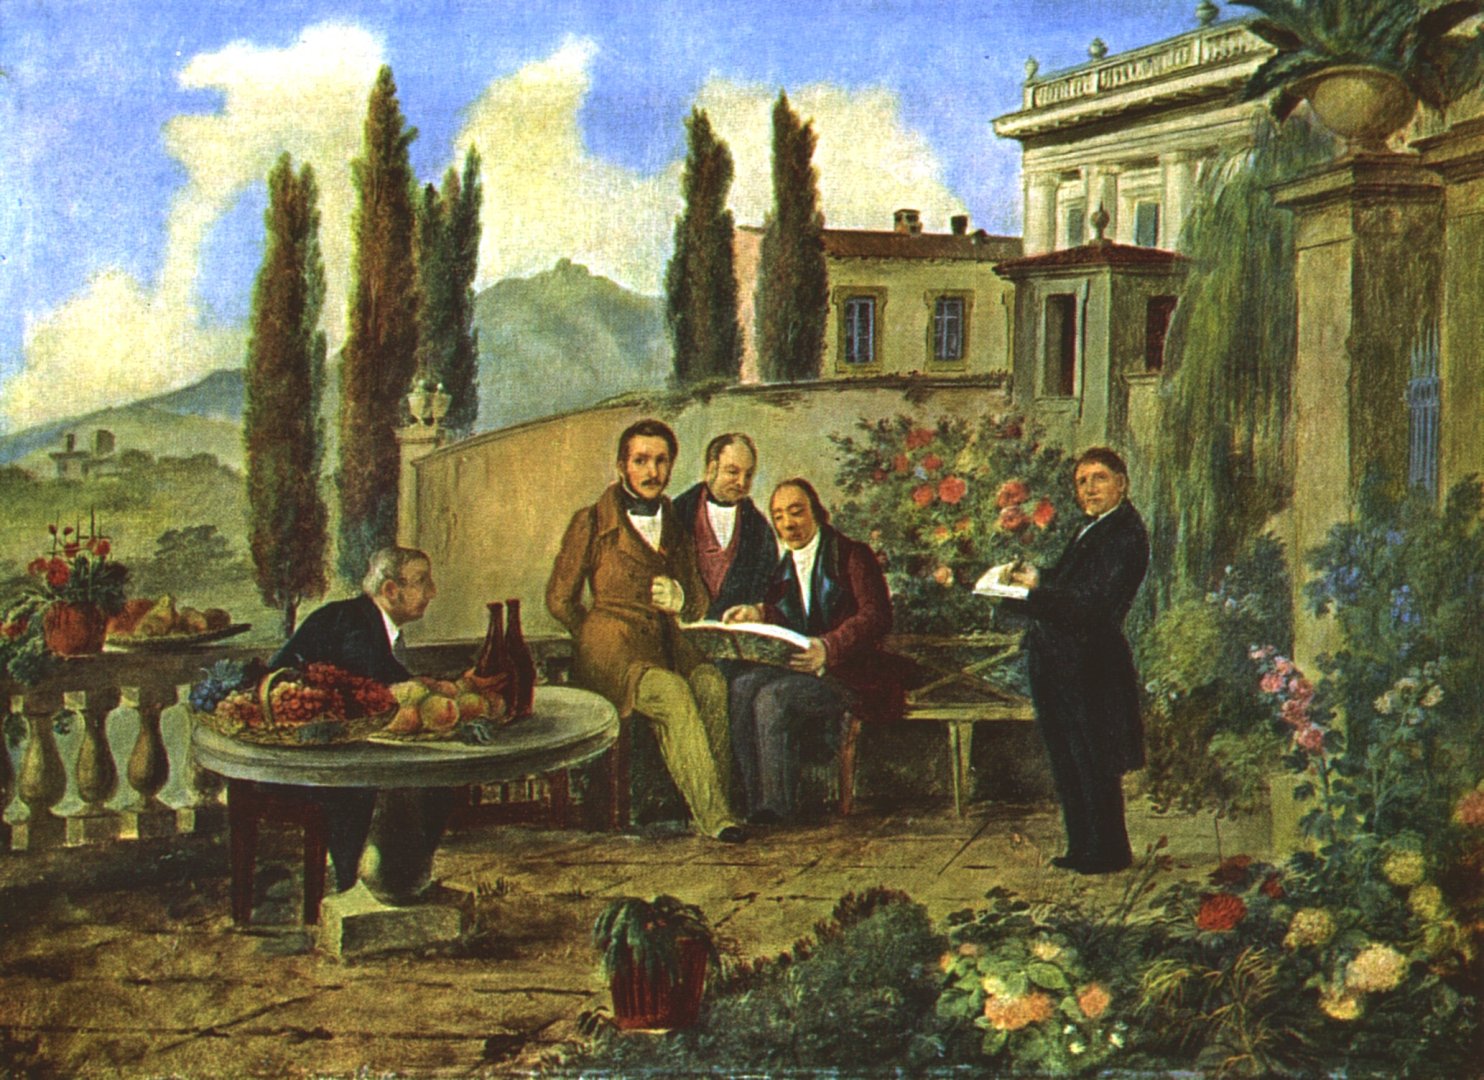 Deleidi: Donizetti és barátai: (balról jobbra) Luigi Bettinelli [it], Gaetano Donizetti, Antonio Dolci [ru], Simon Mayr, és maga a festő, Luigi Deleidi, Bergamo, 1840 - forrás: wikipedia